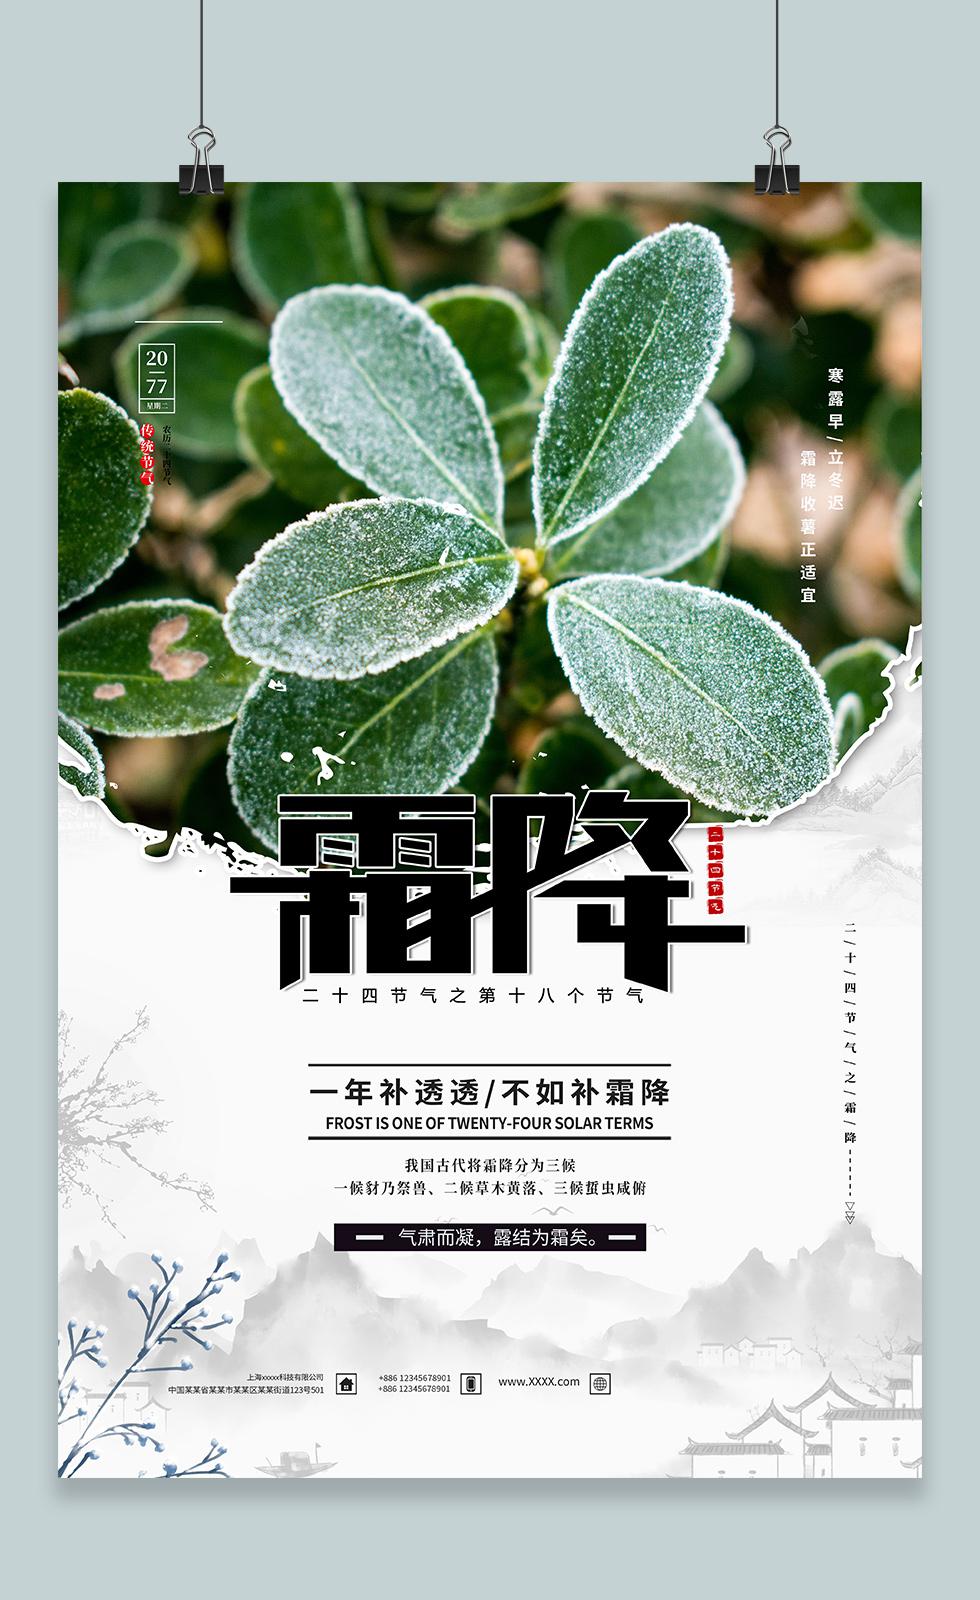 霜降中国传统24节气之一宣传海报 3.JPG